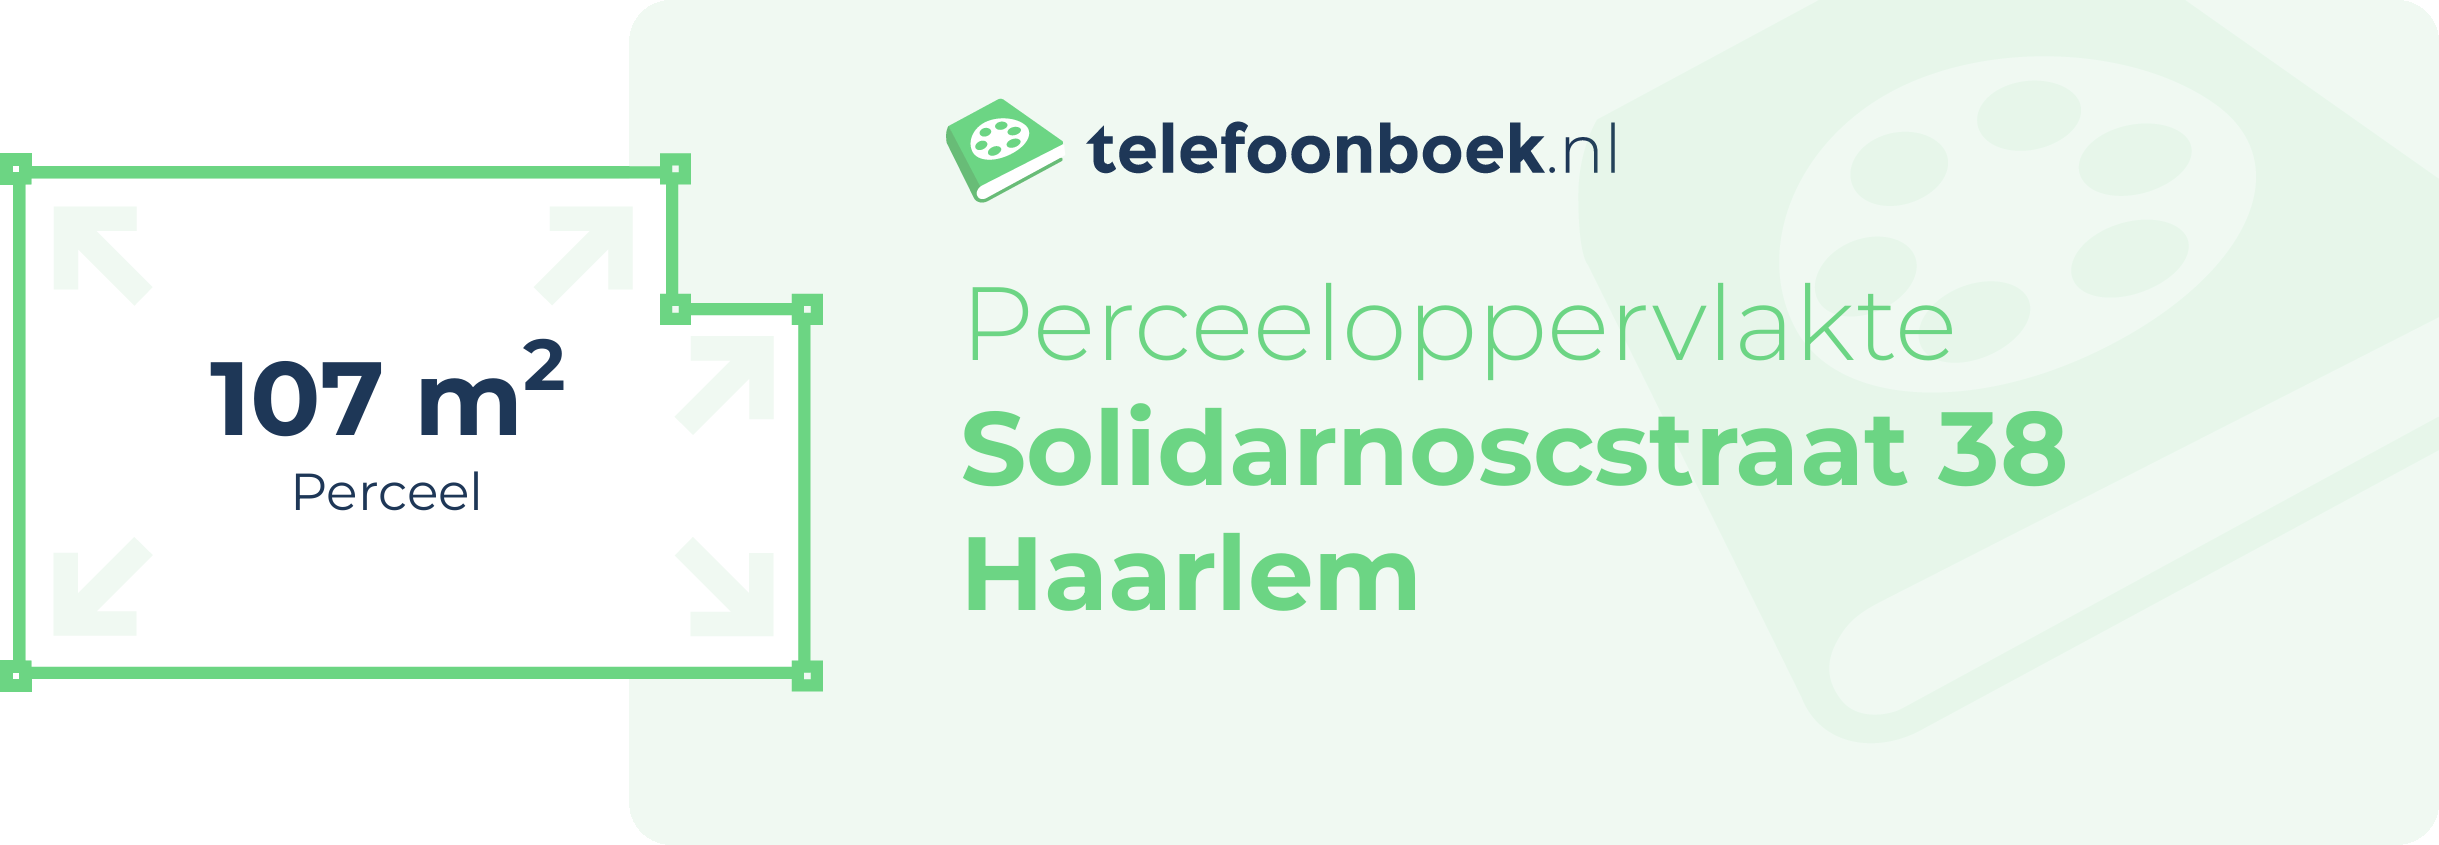 Perceeloppervlakte Solidarnoscstraat 38 Haarlem